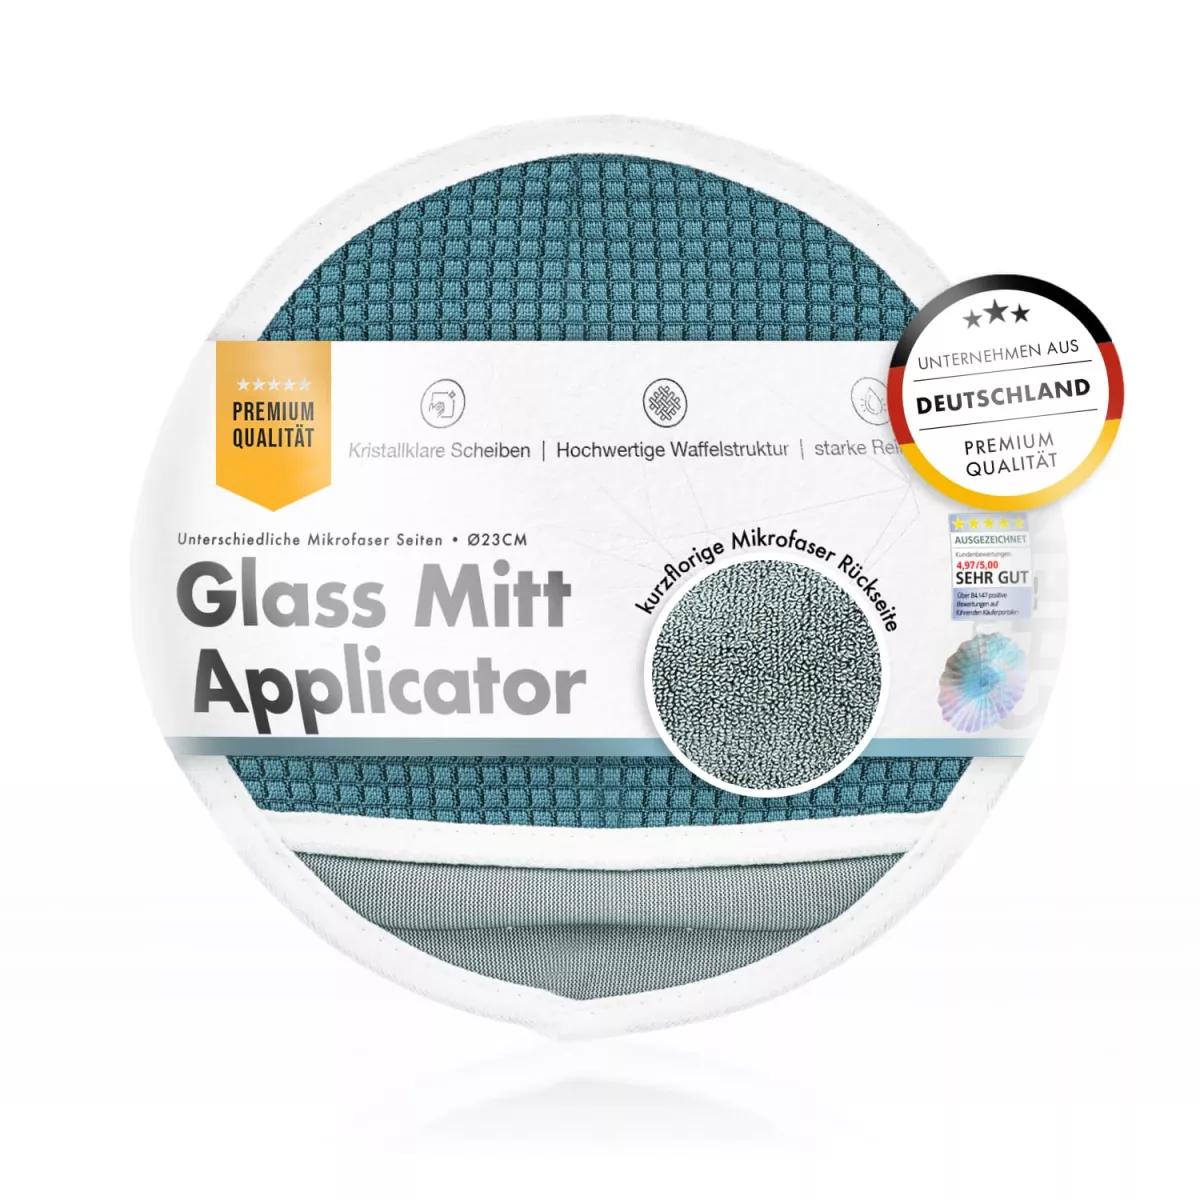 Glass Mitt Applicator